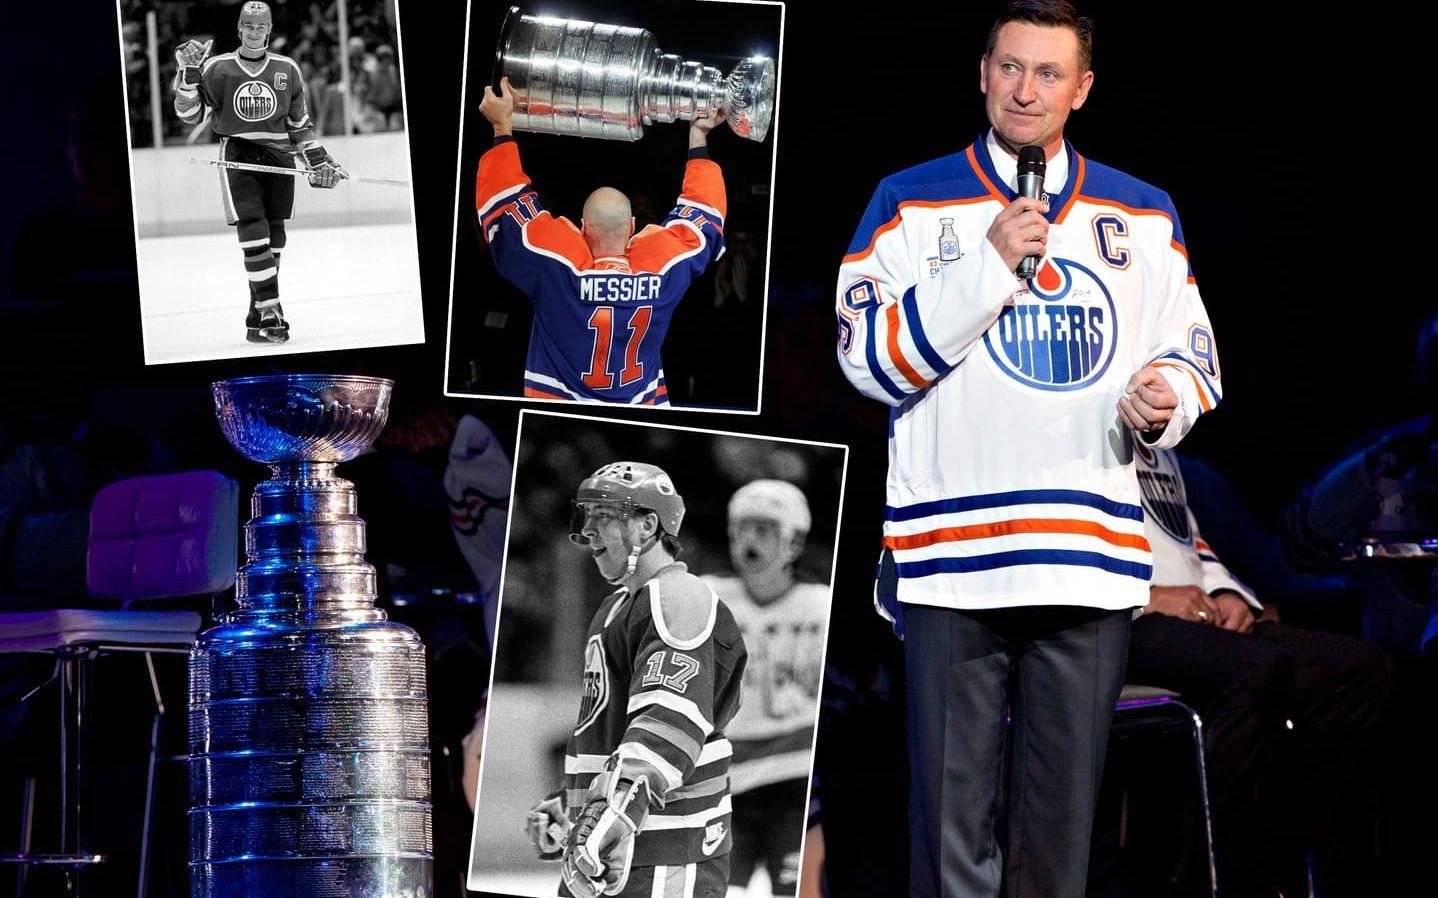 Plats 1: 1983-84 Edmonton Oilers. Superduon Wayne Gretzky och Jari Kurri satte skräck i hela NHL när de tillsammans stod för makalösa 343 poäng under grundserien. Poängmässigt var det Gretzkys näst bästa säsong (208p) och Kurris bästa (135p). Succén fortsatte i slutspelet där "The Great One" satte assistrekord i slutspelet med hela 30 målgivande passningar, ett rekord han slog tre år senare. Genom att slå Philadelphia Flyers och ta klubbens andra raka Stanley Cup visade man att fjolårets succé bara var början på en av NHL:s mäktigaste dynastier någonsin. Bild:Bildbyrån/TT